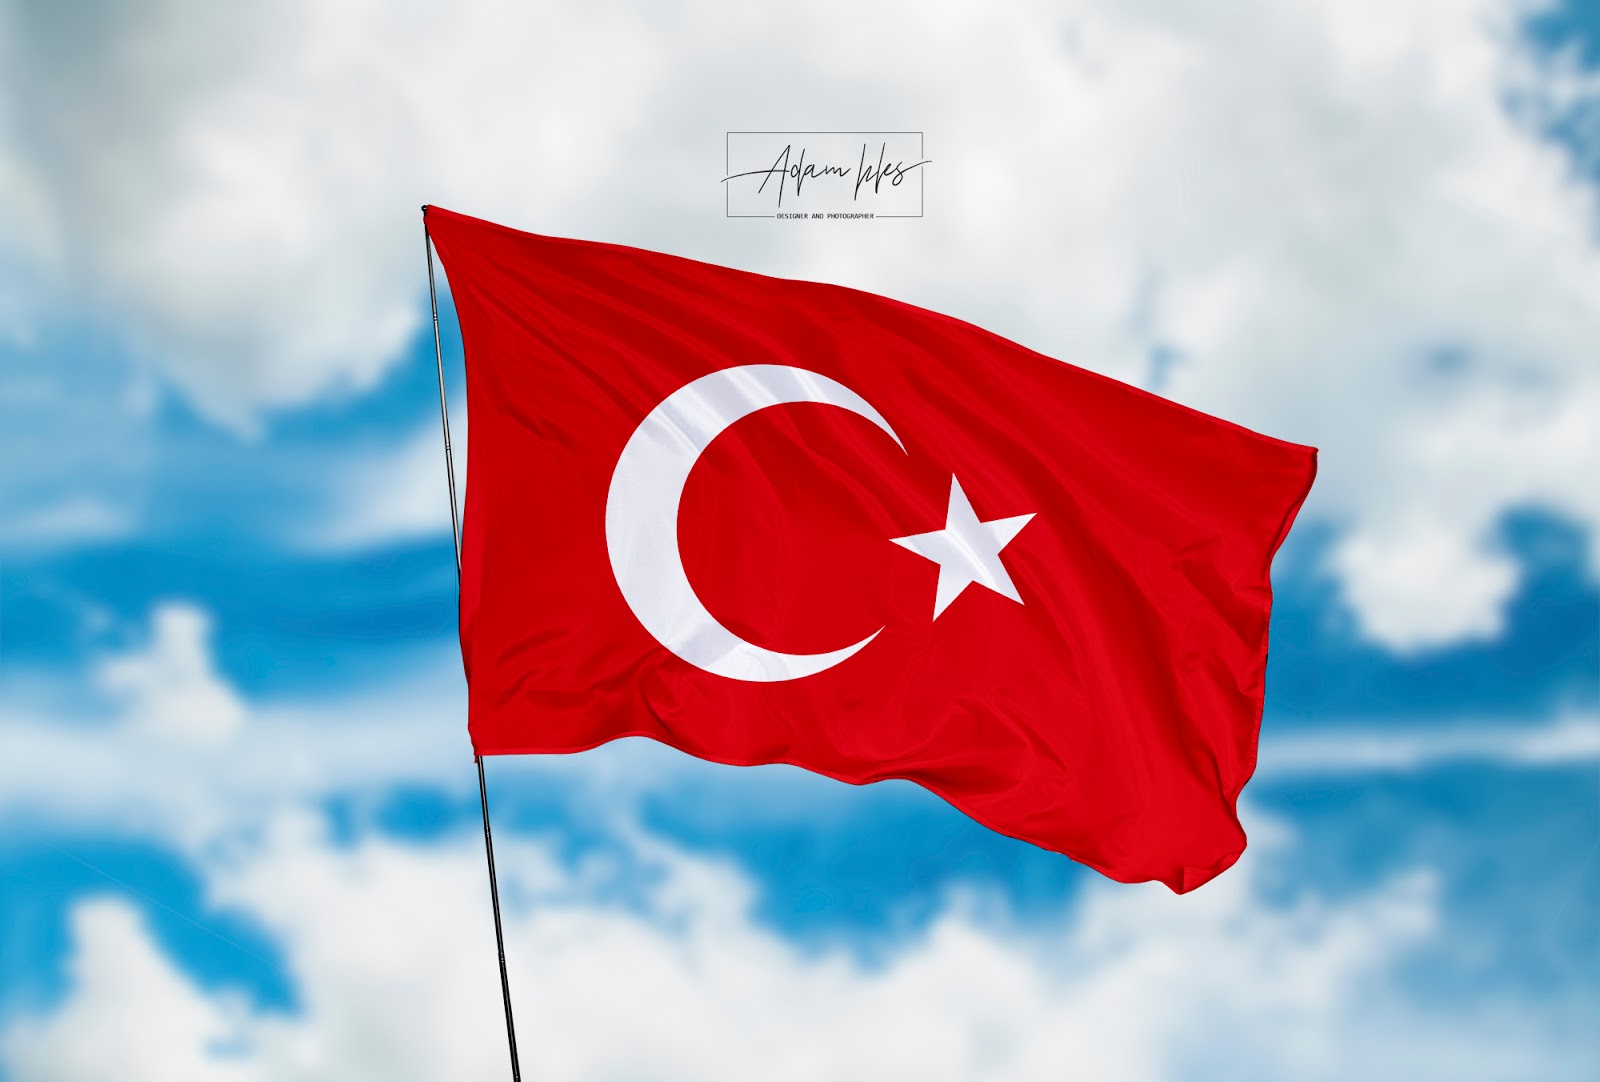 تحميل خلفية علم تركيا يرفرف في سماء صور علم تركيا رائعة 2020